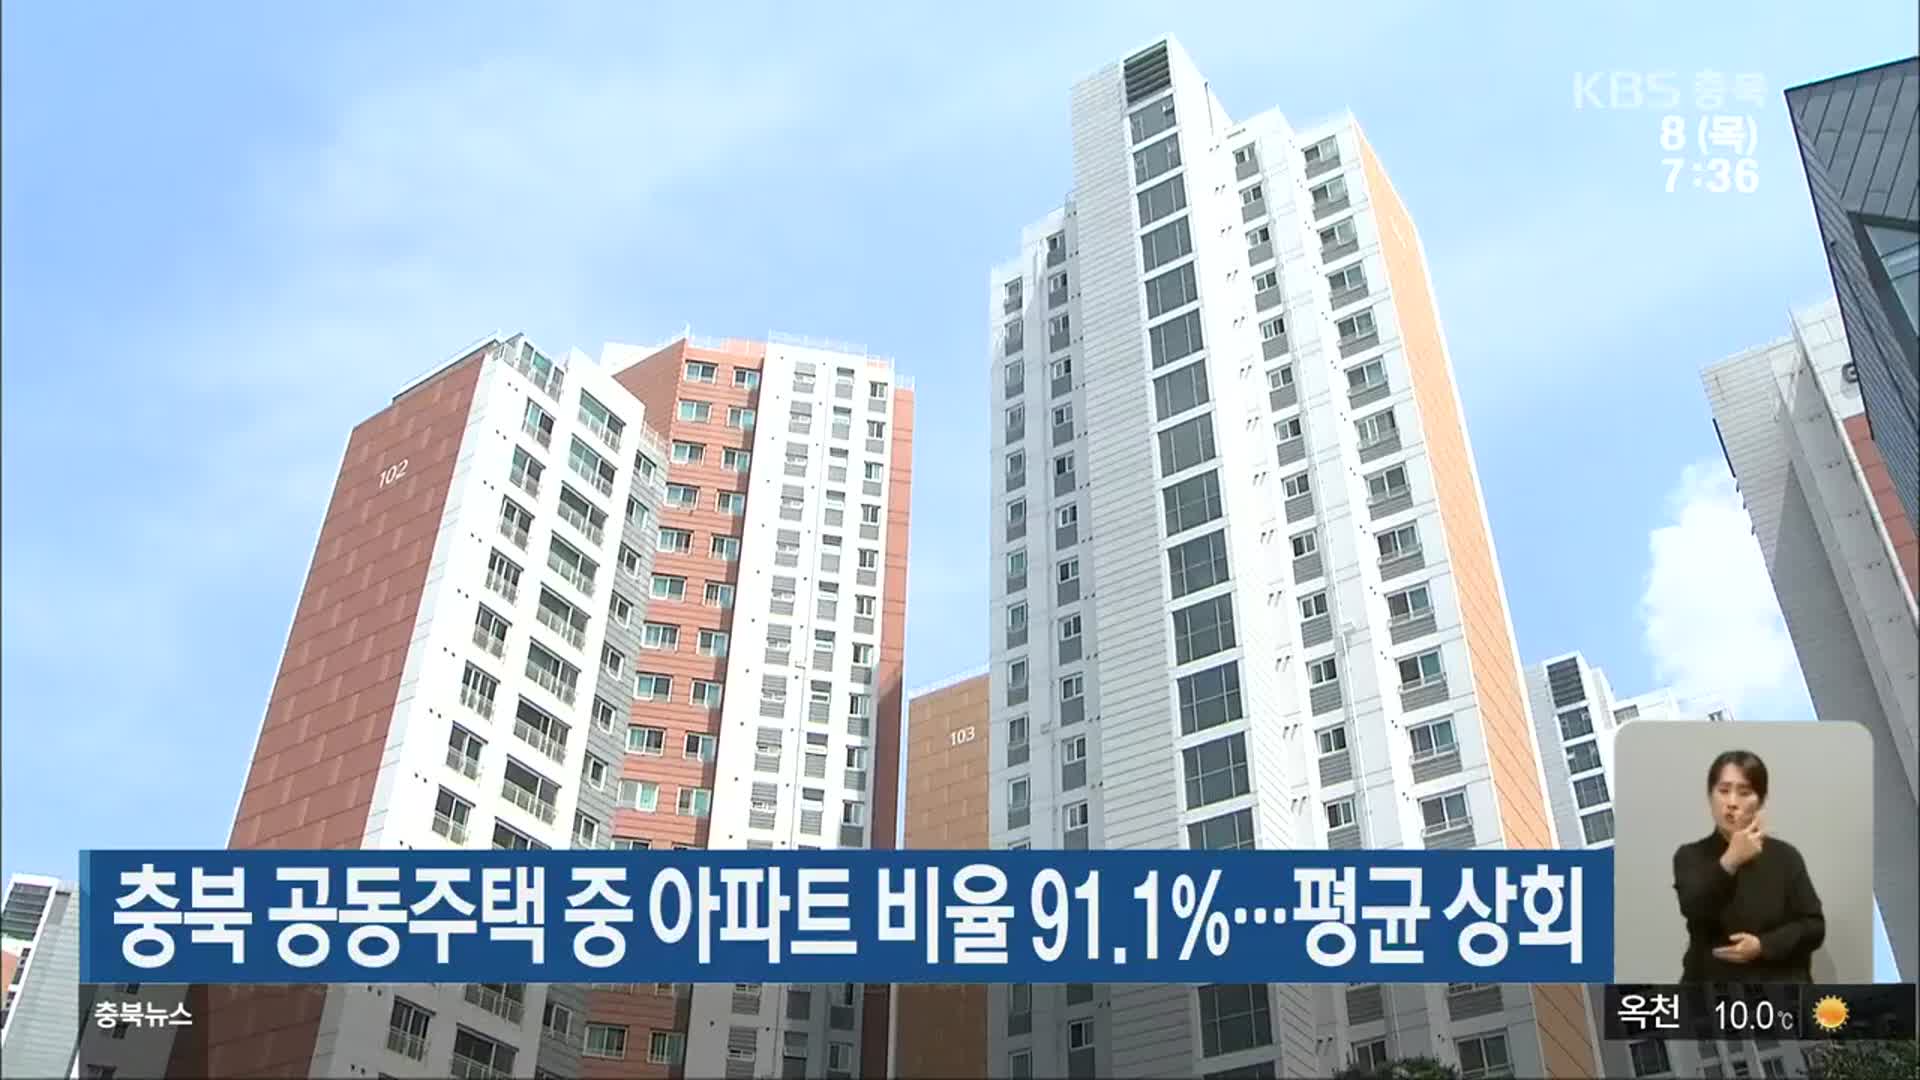 충북 공동주택 중 아파트 비율 91.1%…평균 상회